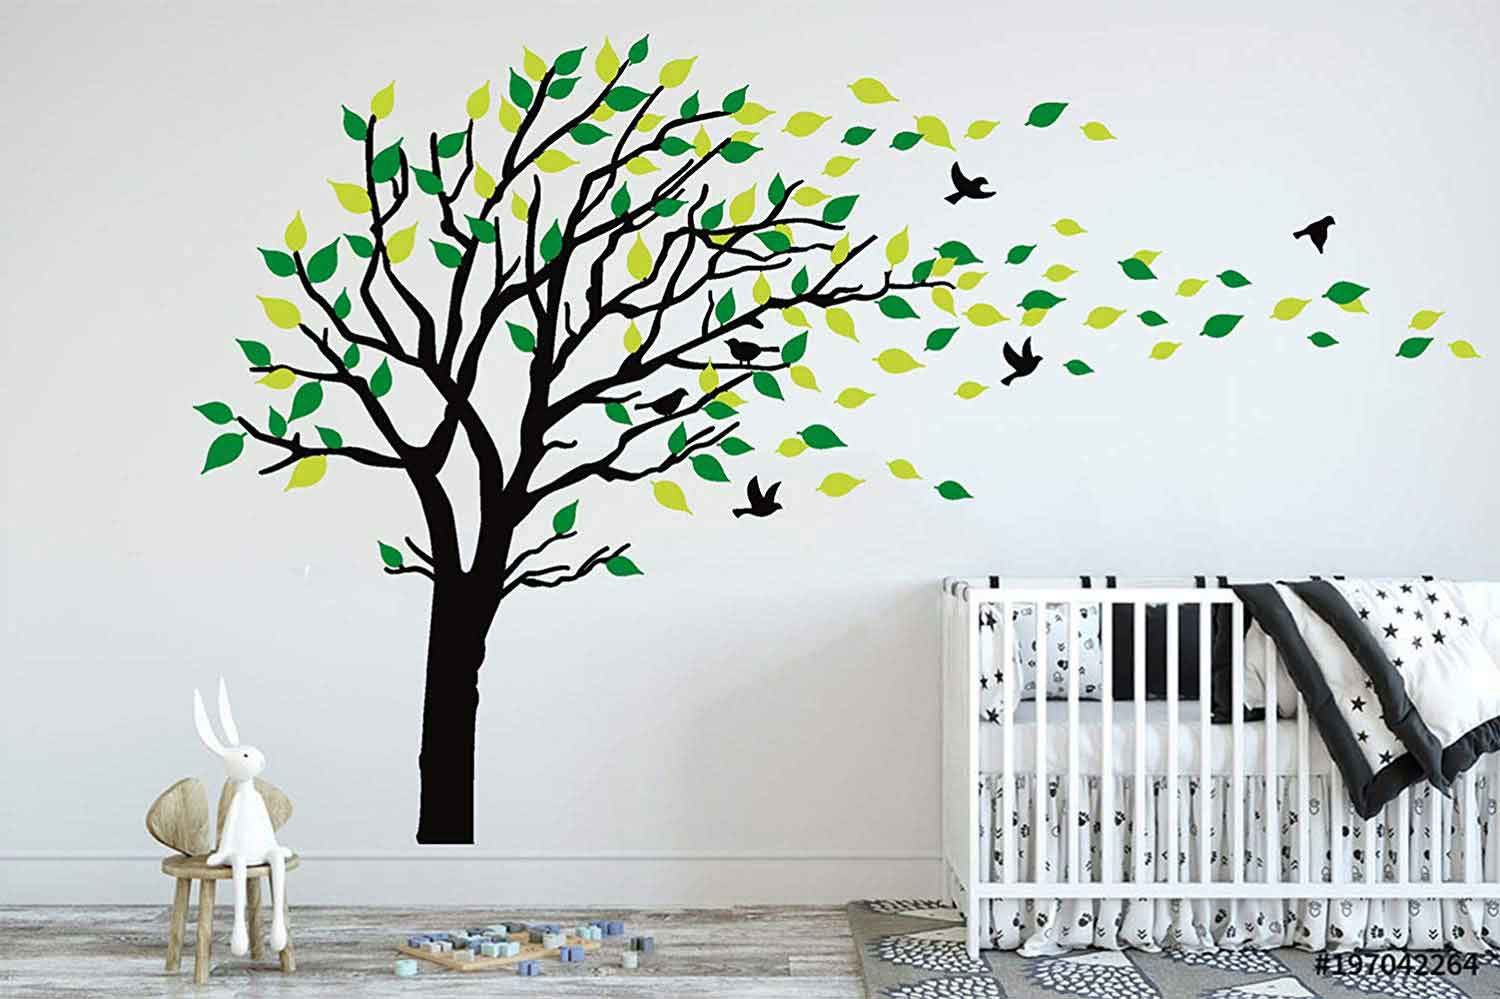 Vẽ tranh tường cái cây - cây màu xanh vàng có chim bay